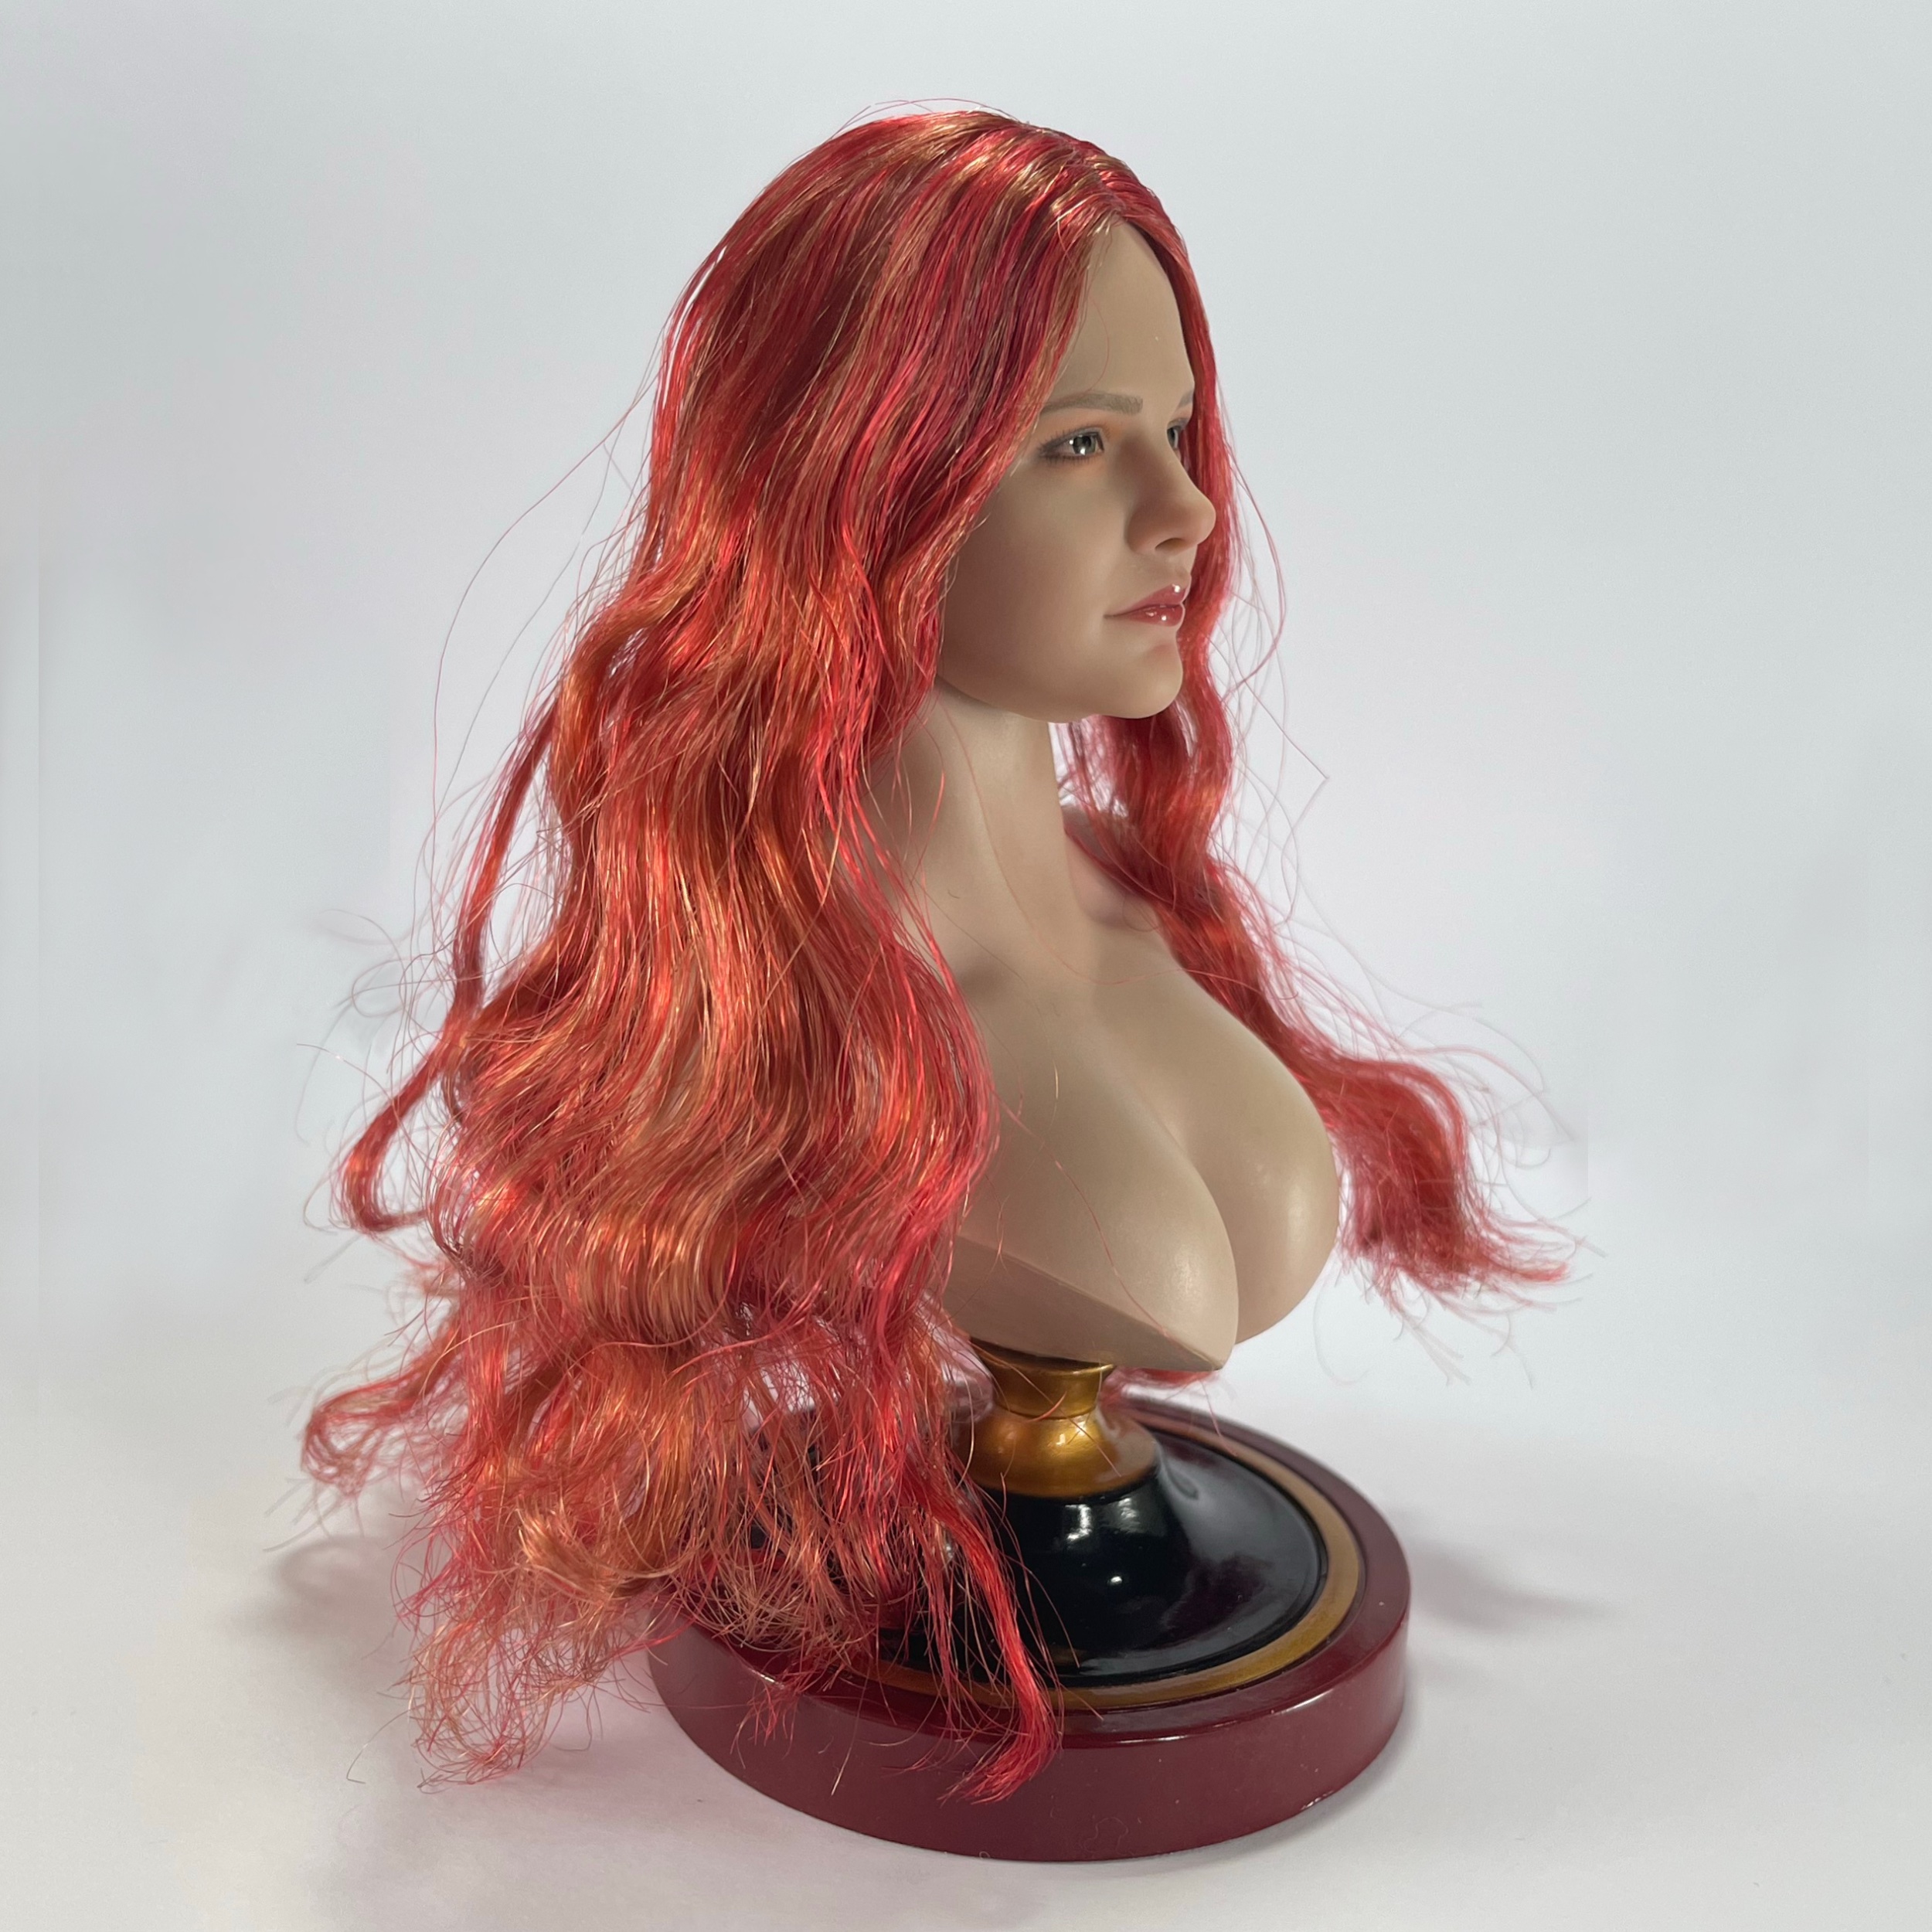 accessory - NEW PRODUCT: SUPER DUCK SDH036 1/6 Scale Female head sculpt in 4 styles 52860114403_56650c0e42_o